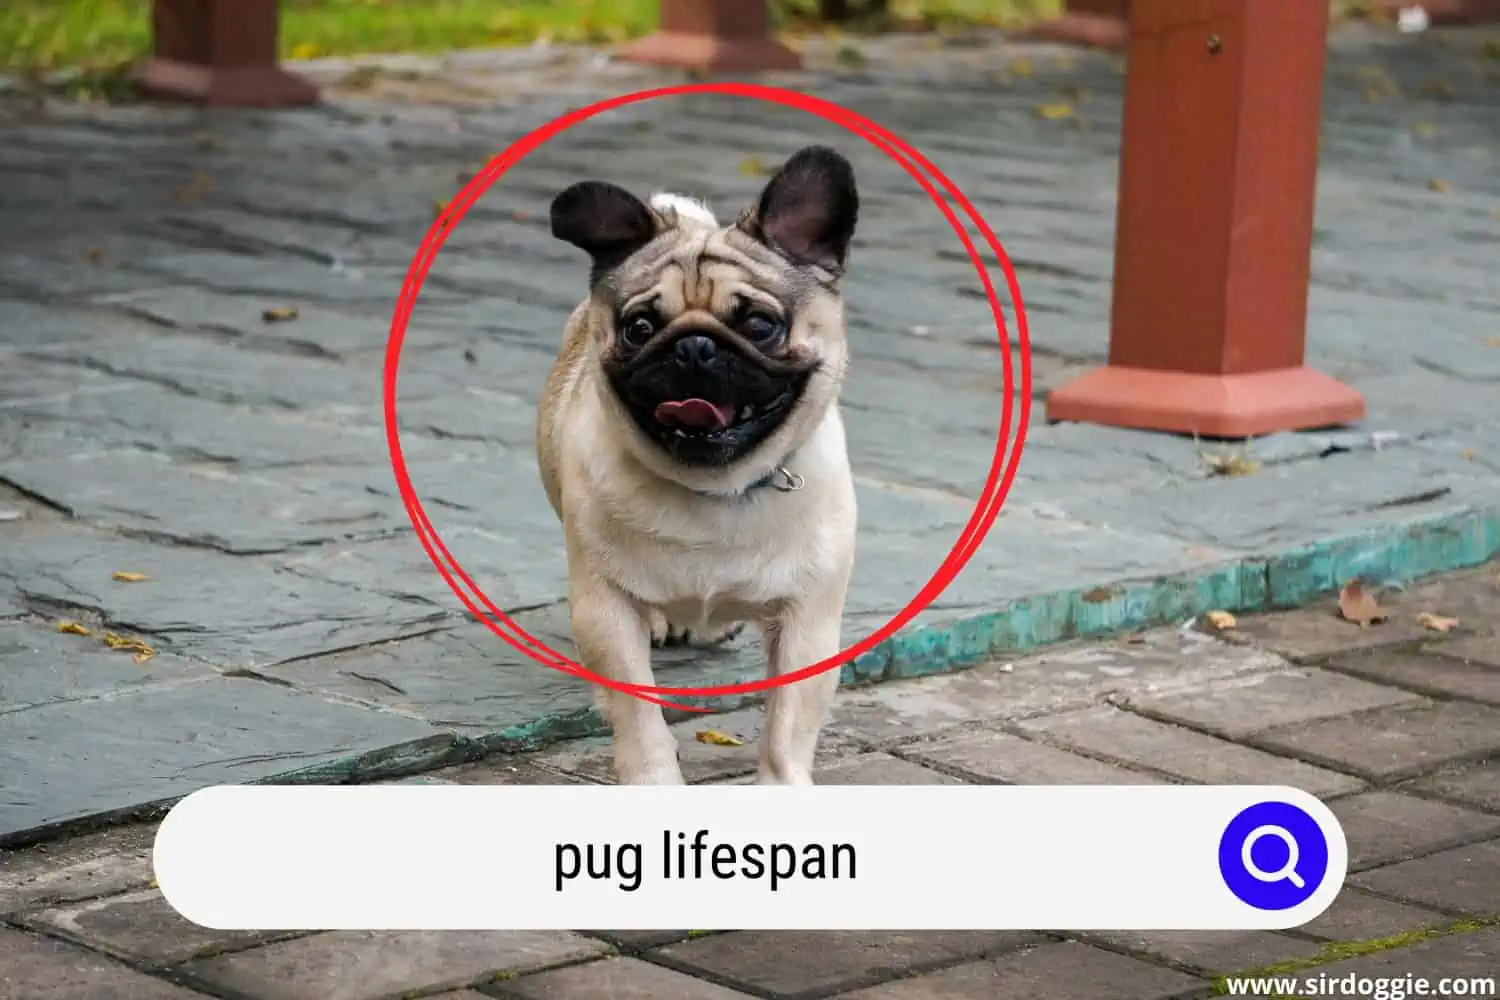 pug lifespan